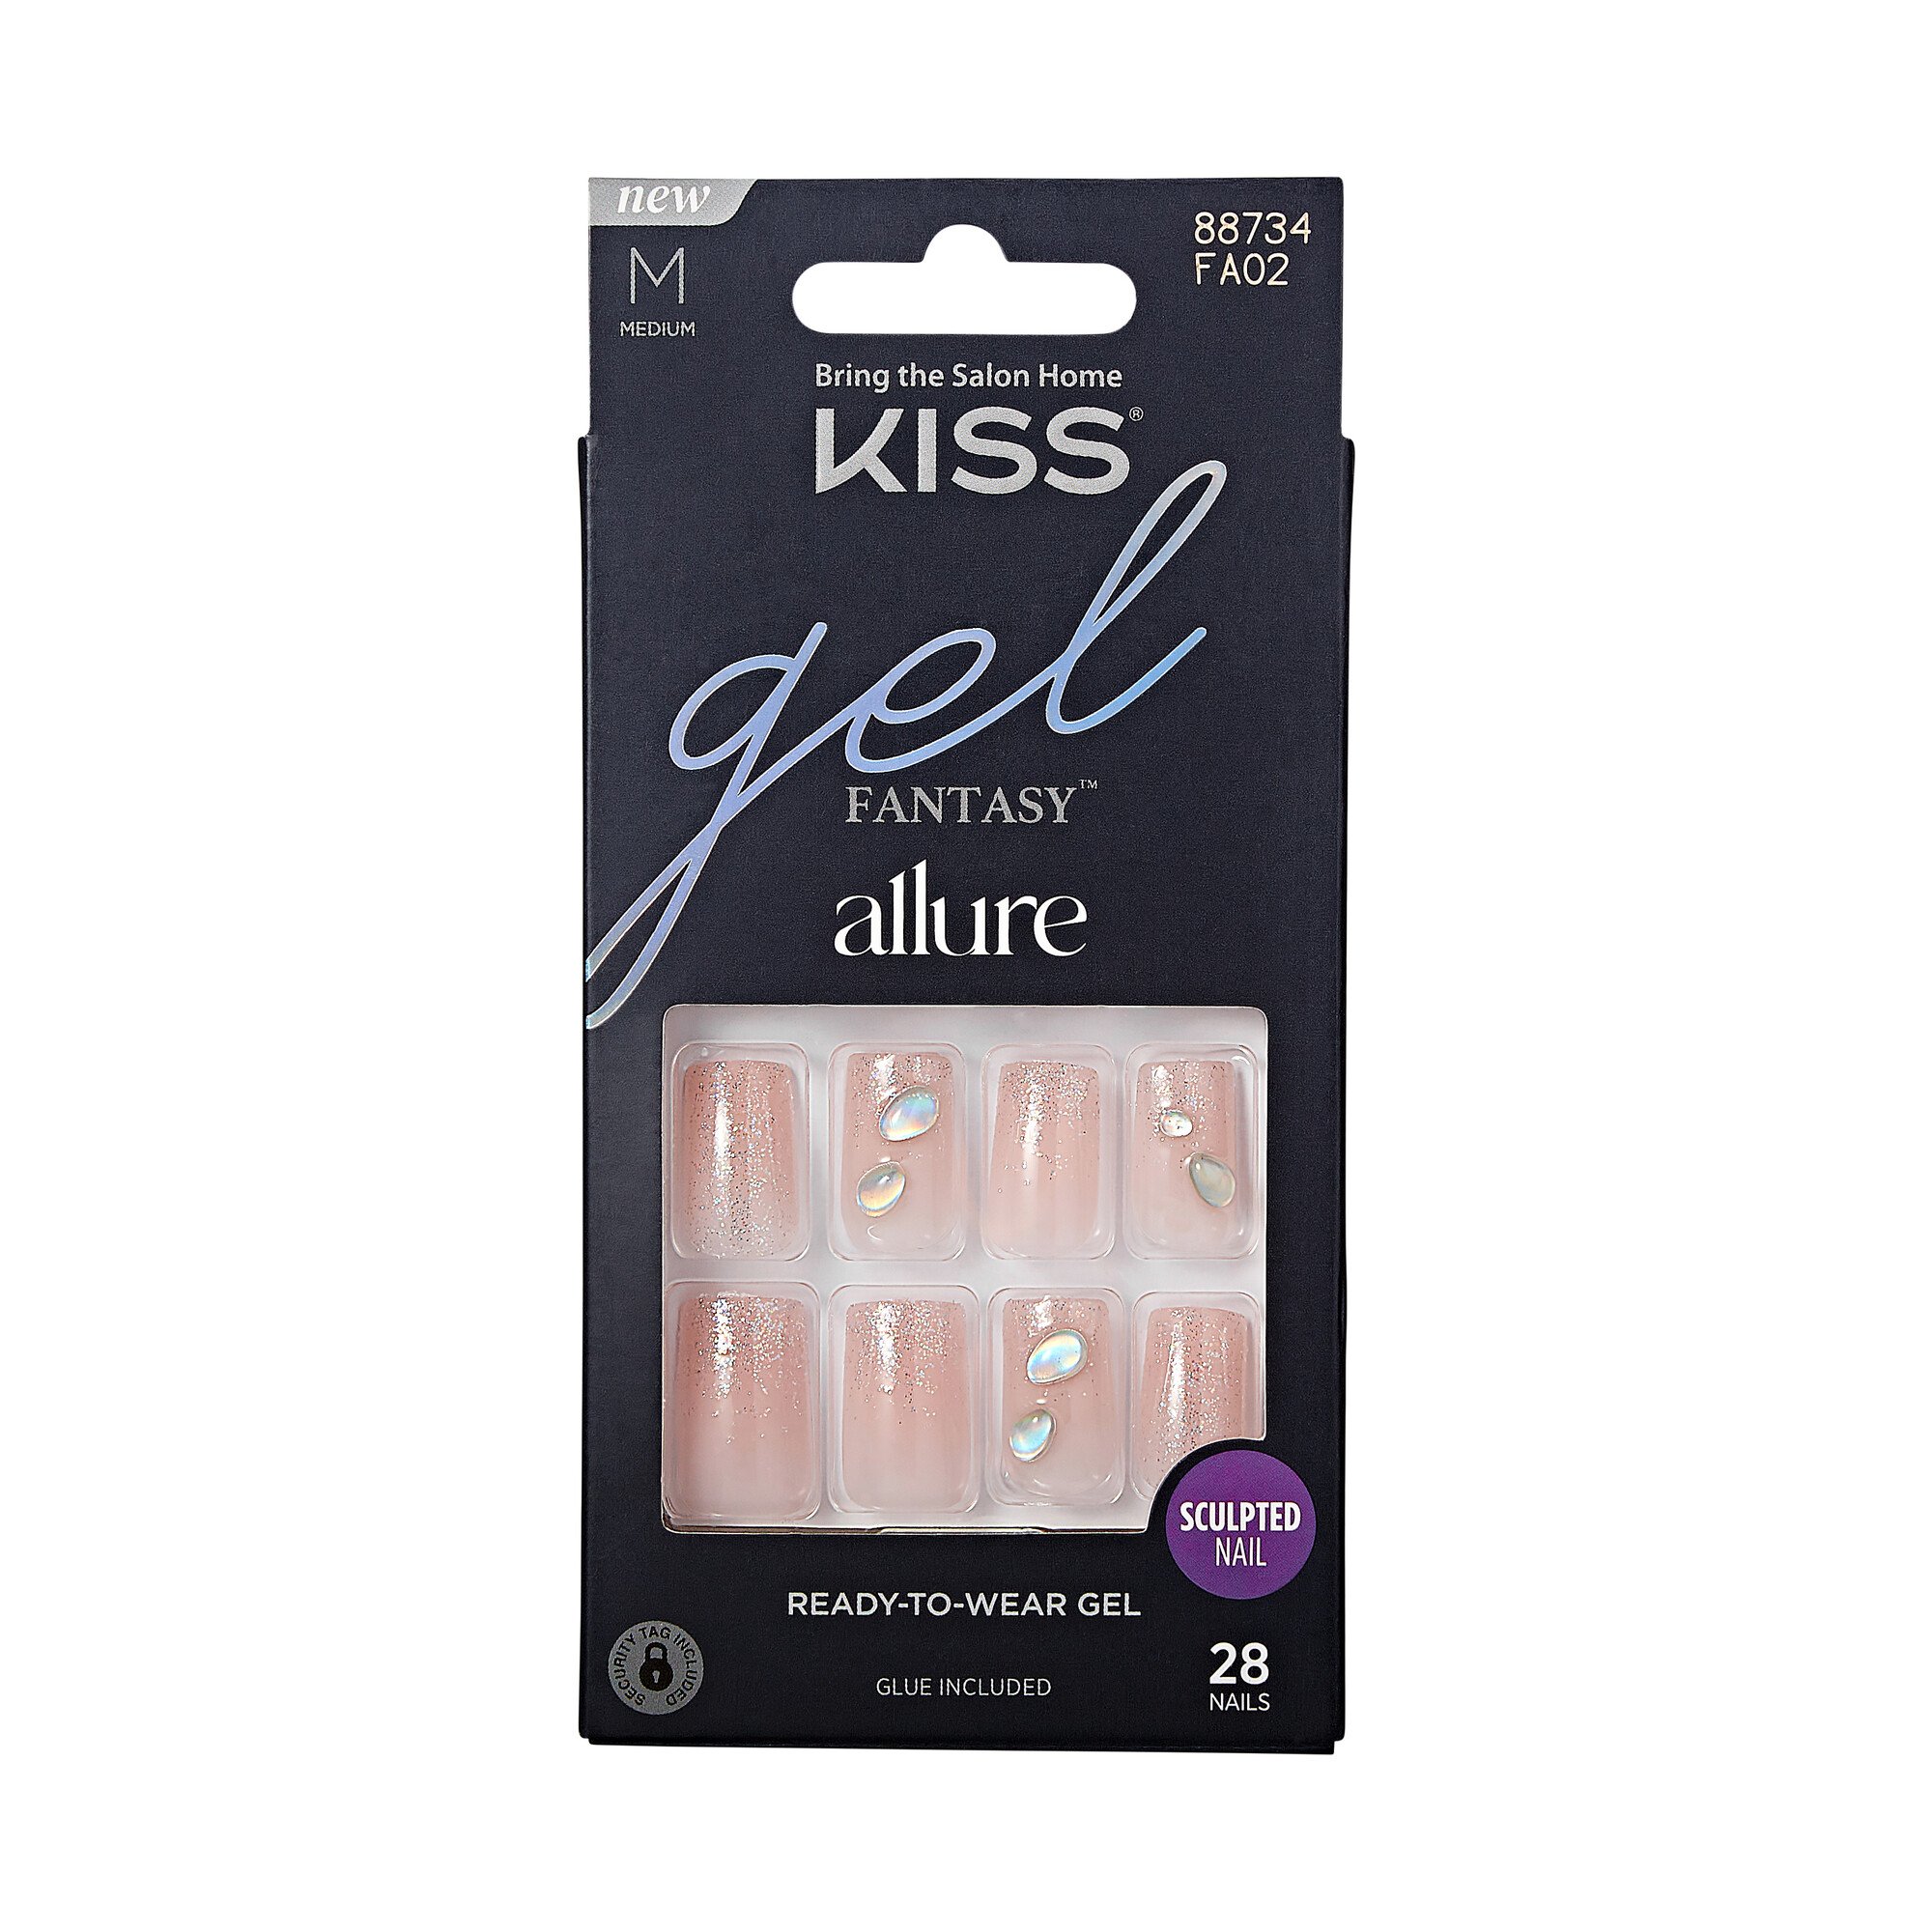 KISS Gel Fantasy Allure Medium Nails - Transformation - Shop Nail Sets ...